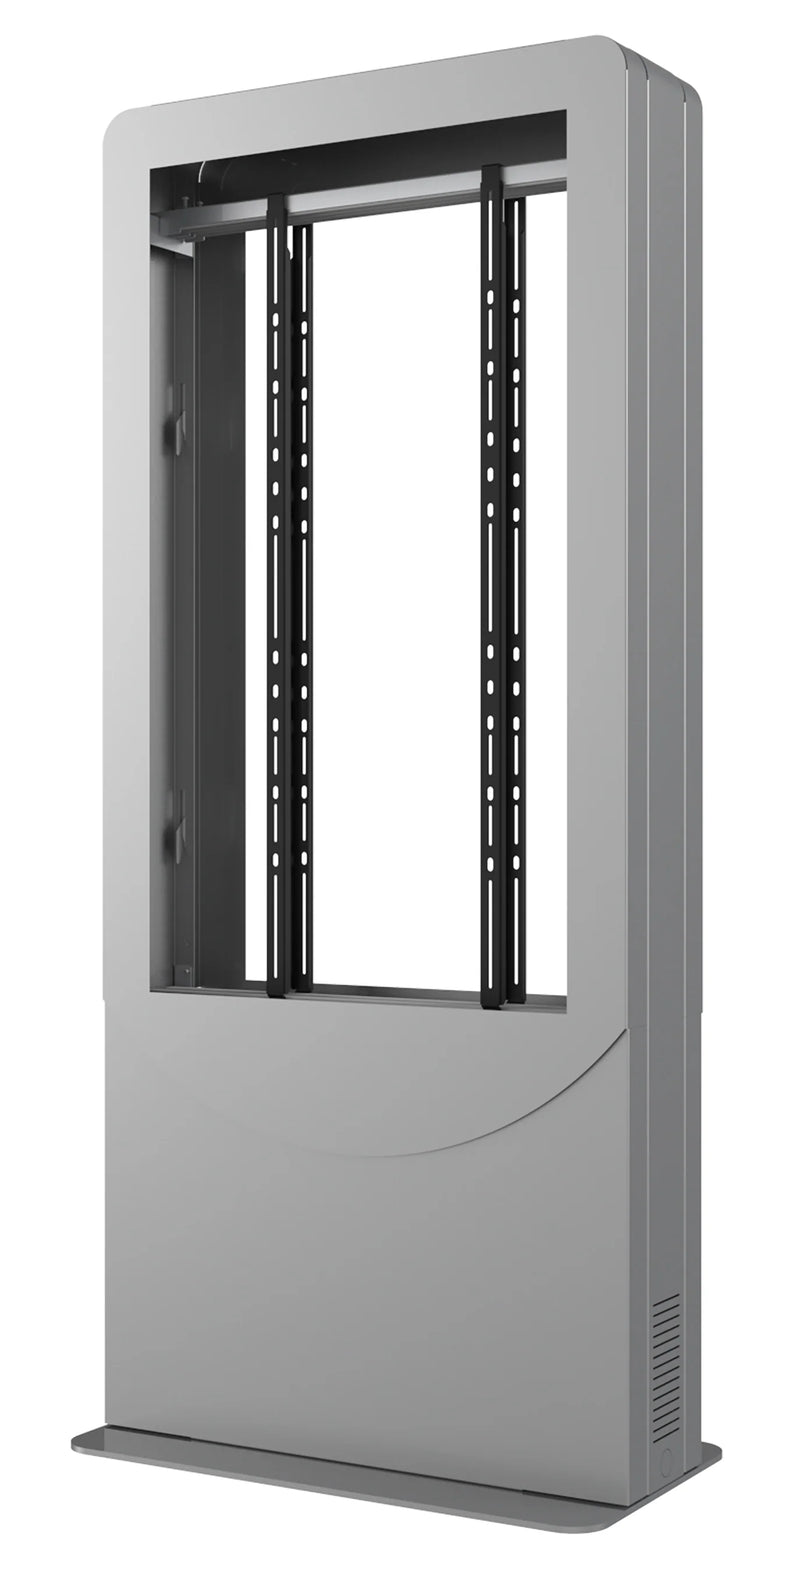 Peerless-AV KIPC2549B-3-S Floorstanding Portrait Back-to-Back Kiosk for Two 49" Displays up to 3" Deep (Silver)